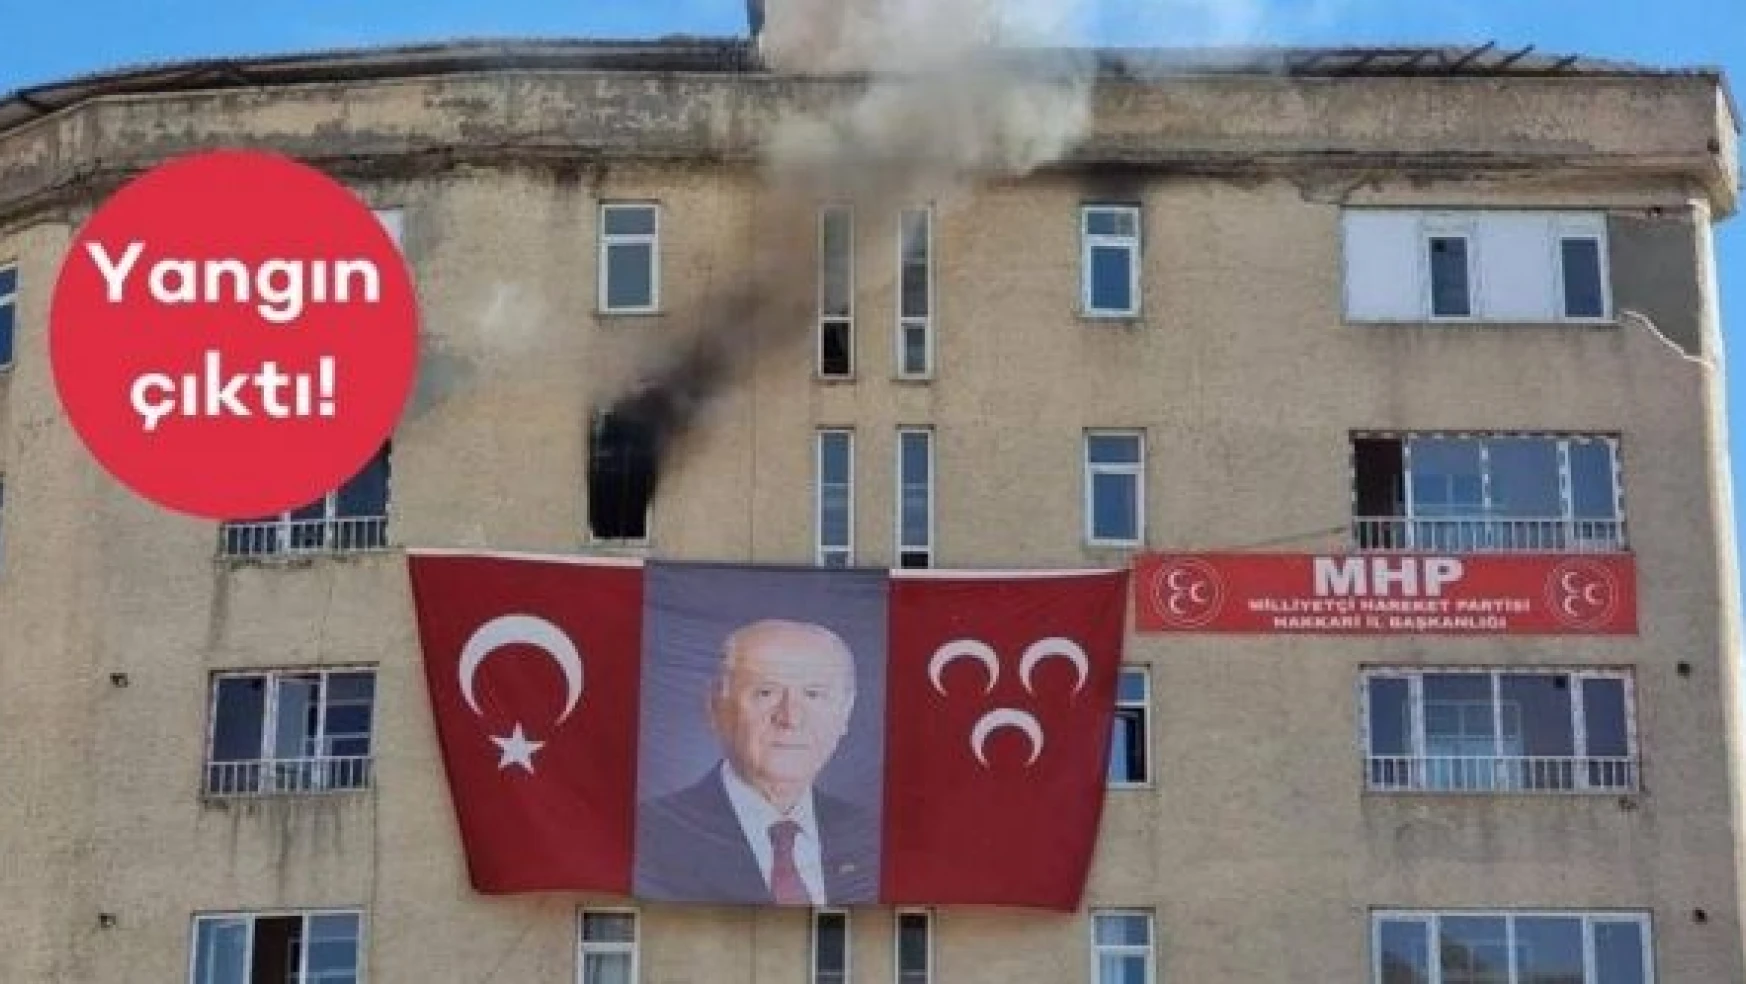 MHP Hakkari İl Başkanlığı'nda yangın çıktı!